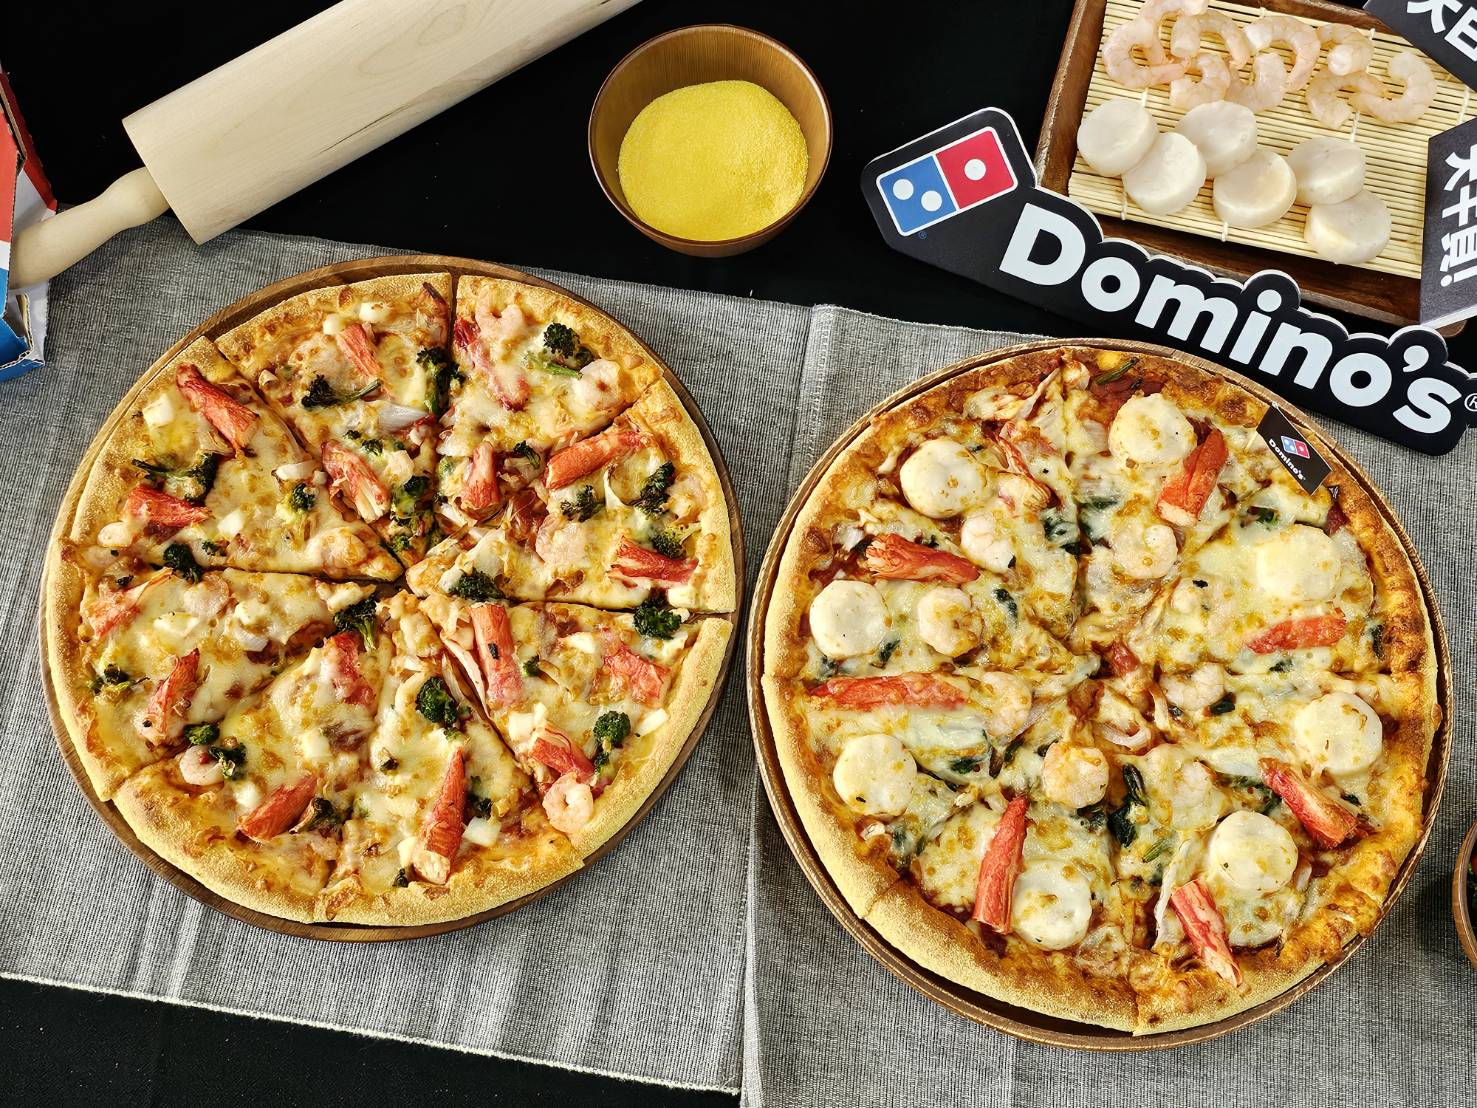 相较于停售的「海鲜披萨」（图左），「极致干贝海鲜披萨」整体用料更加豪华。记者陈睿中／摄影